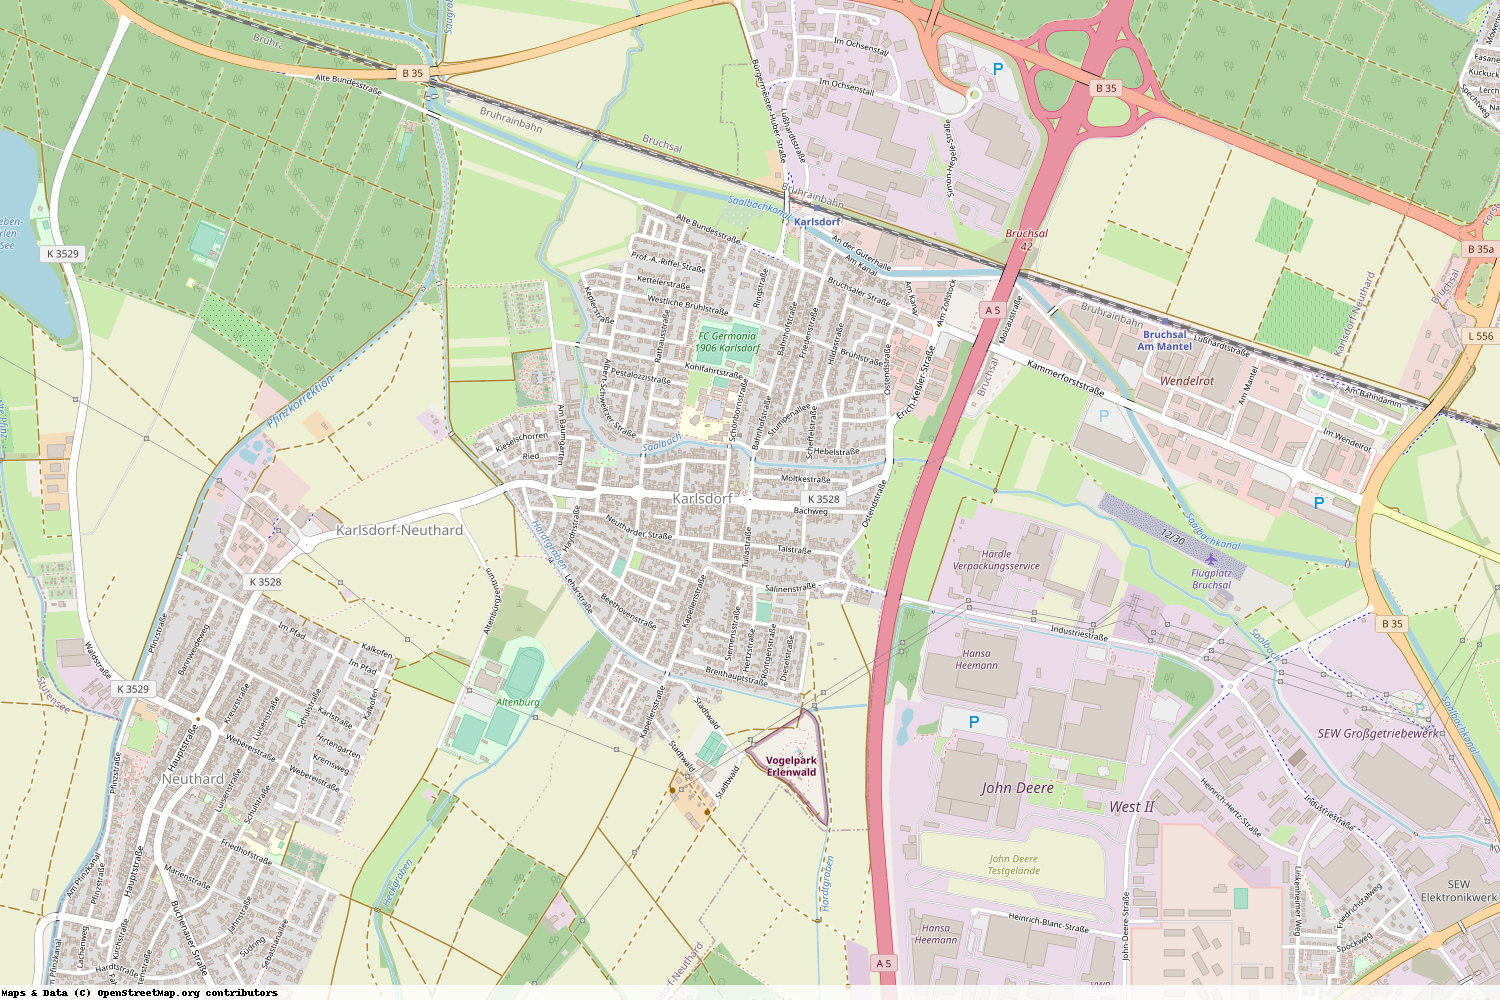 Ist gerade Stromausfall in Baden-Württemberg - Karlsruhe - Karlsdorf-Neuthard?